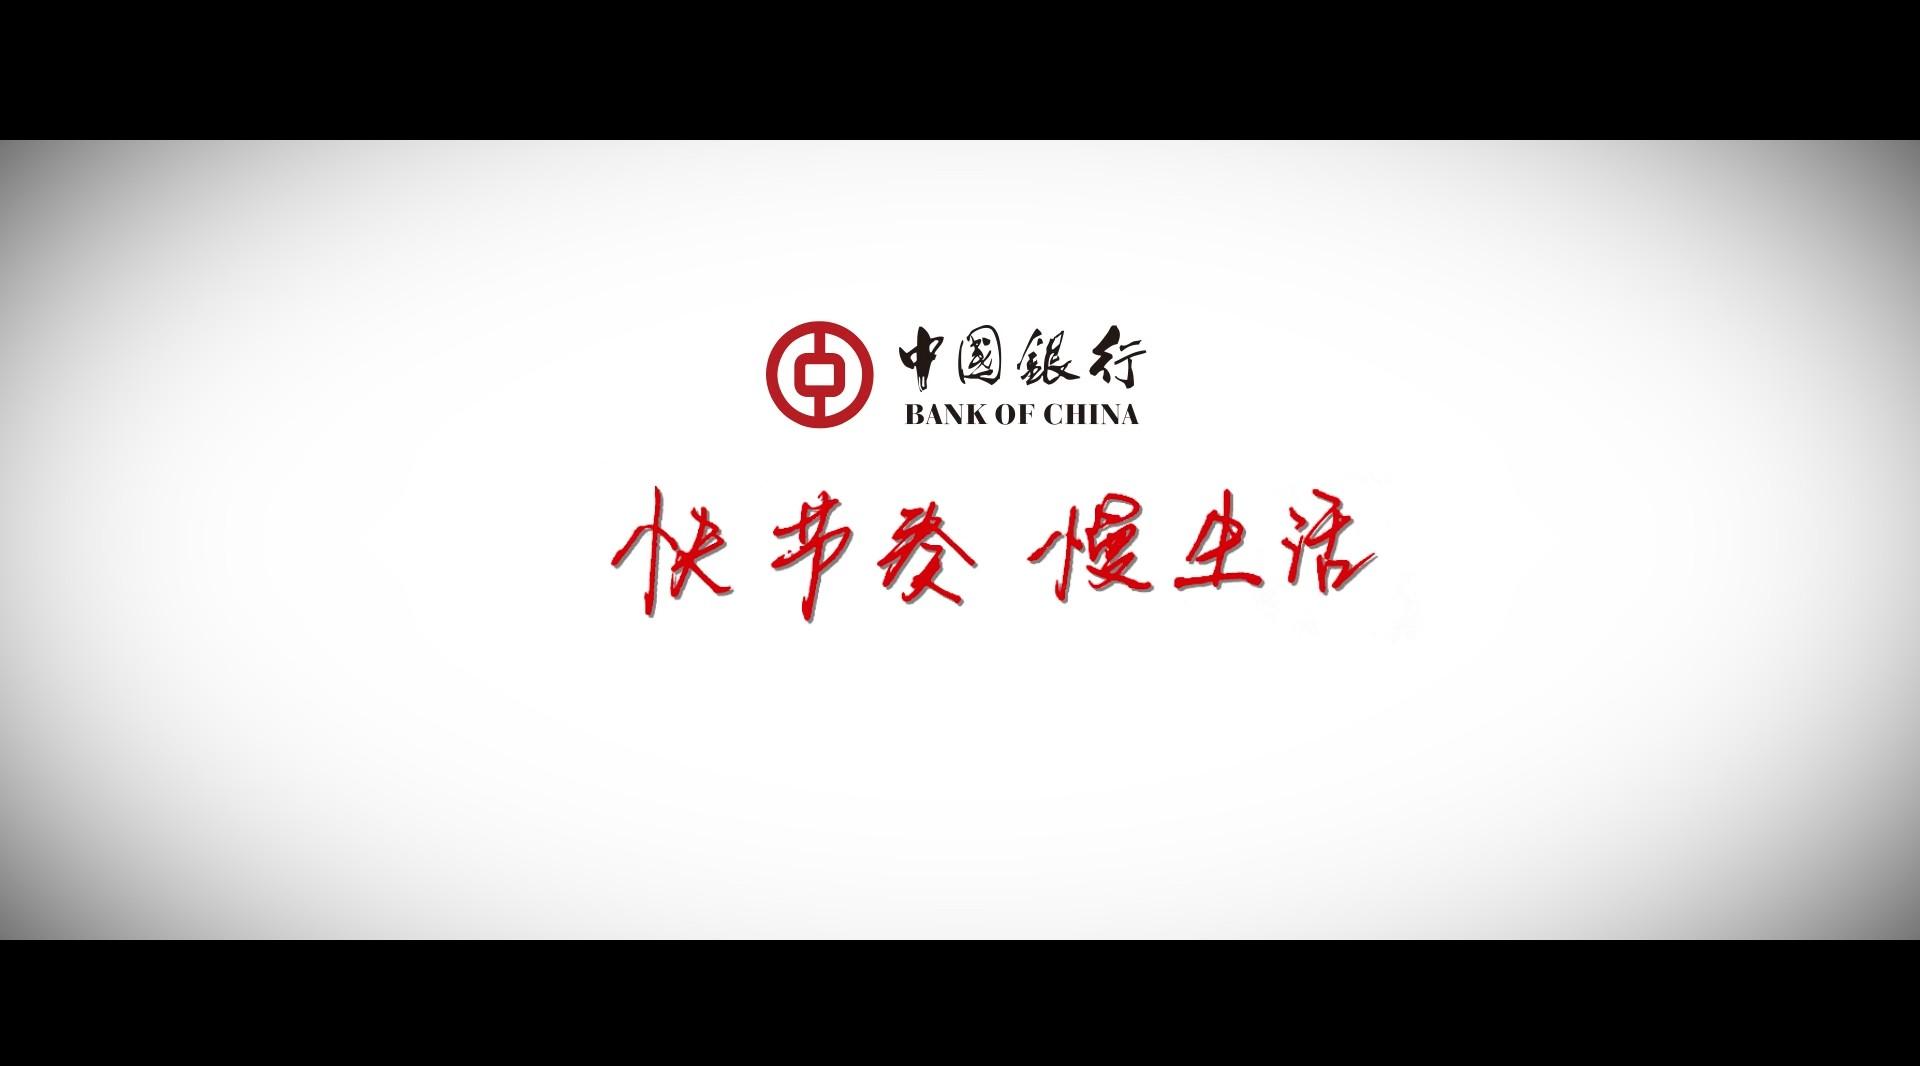 中国银行“快节奏 慢生活”微电影